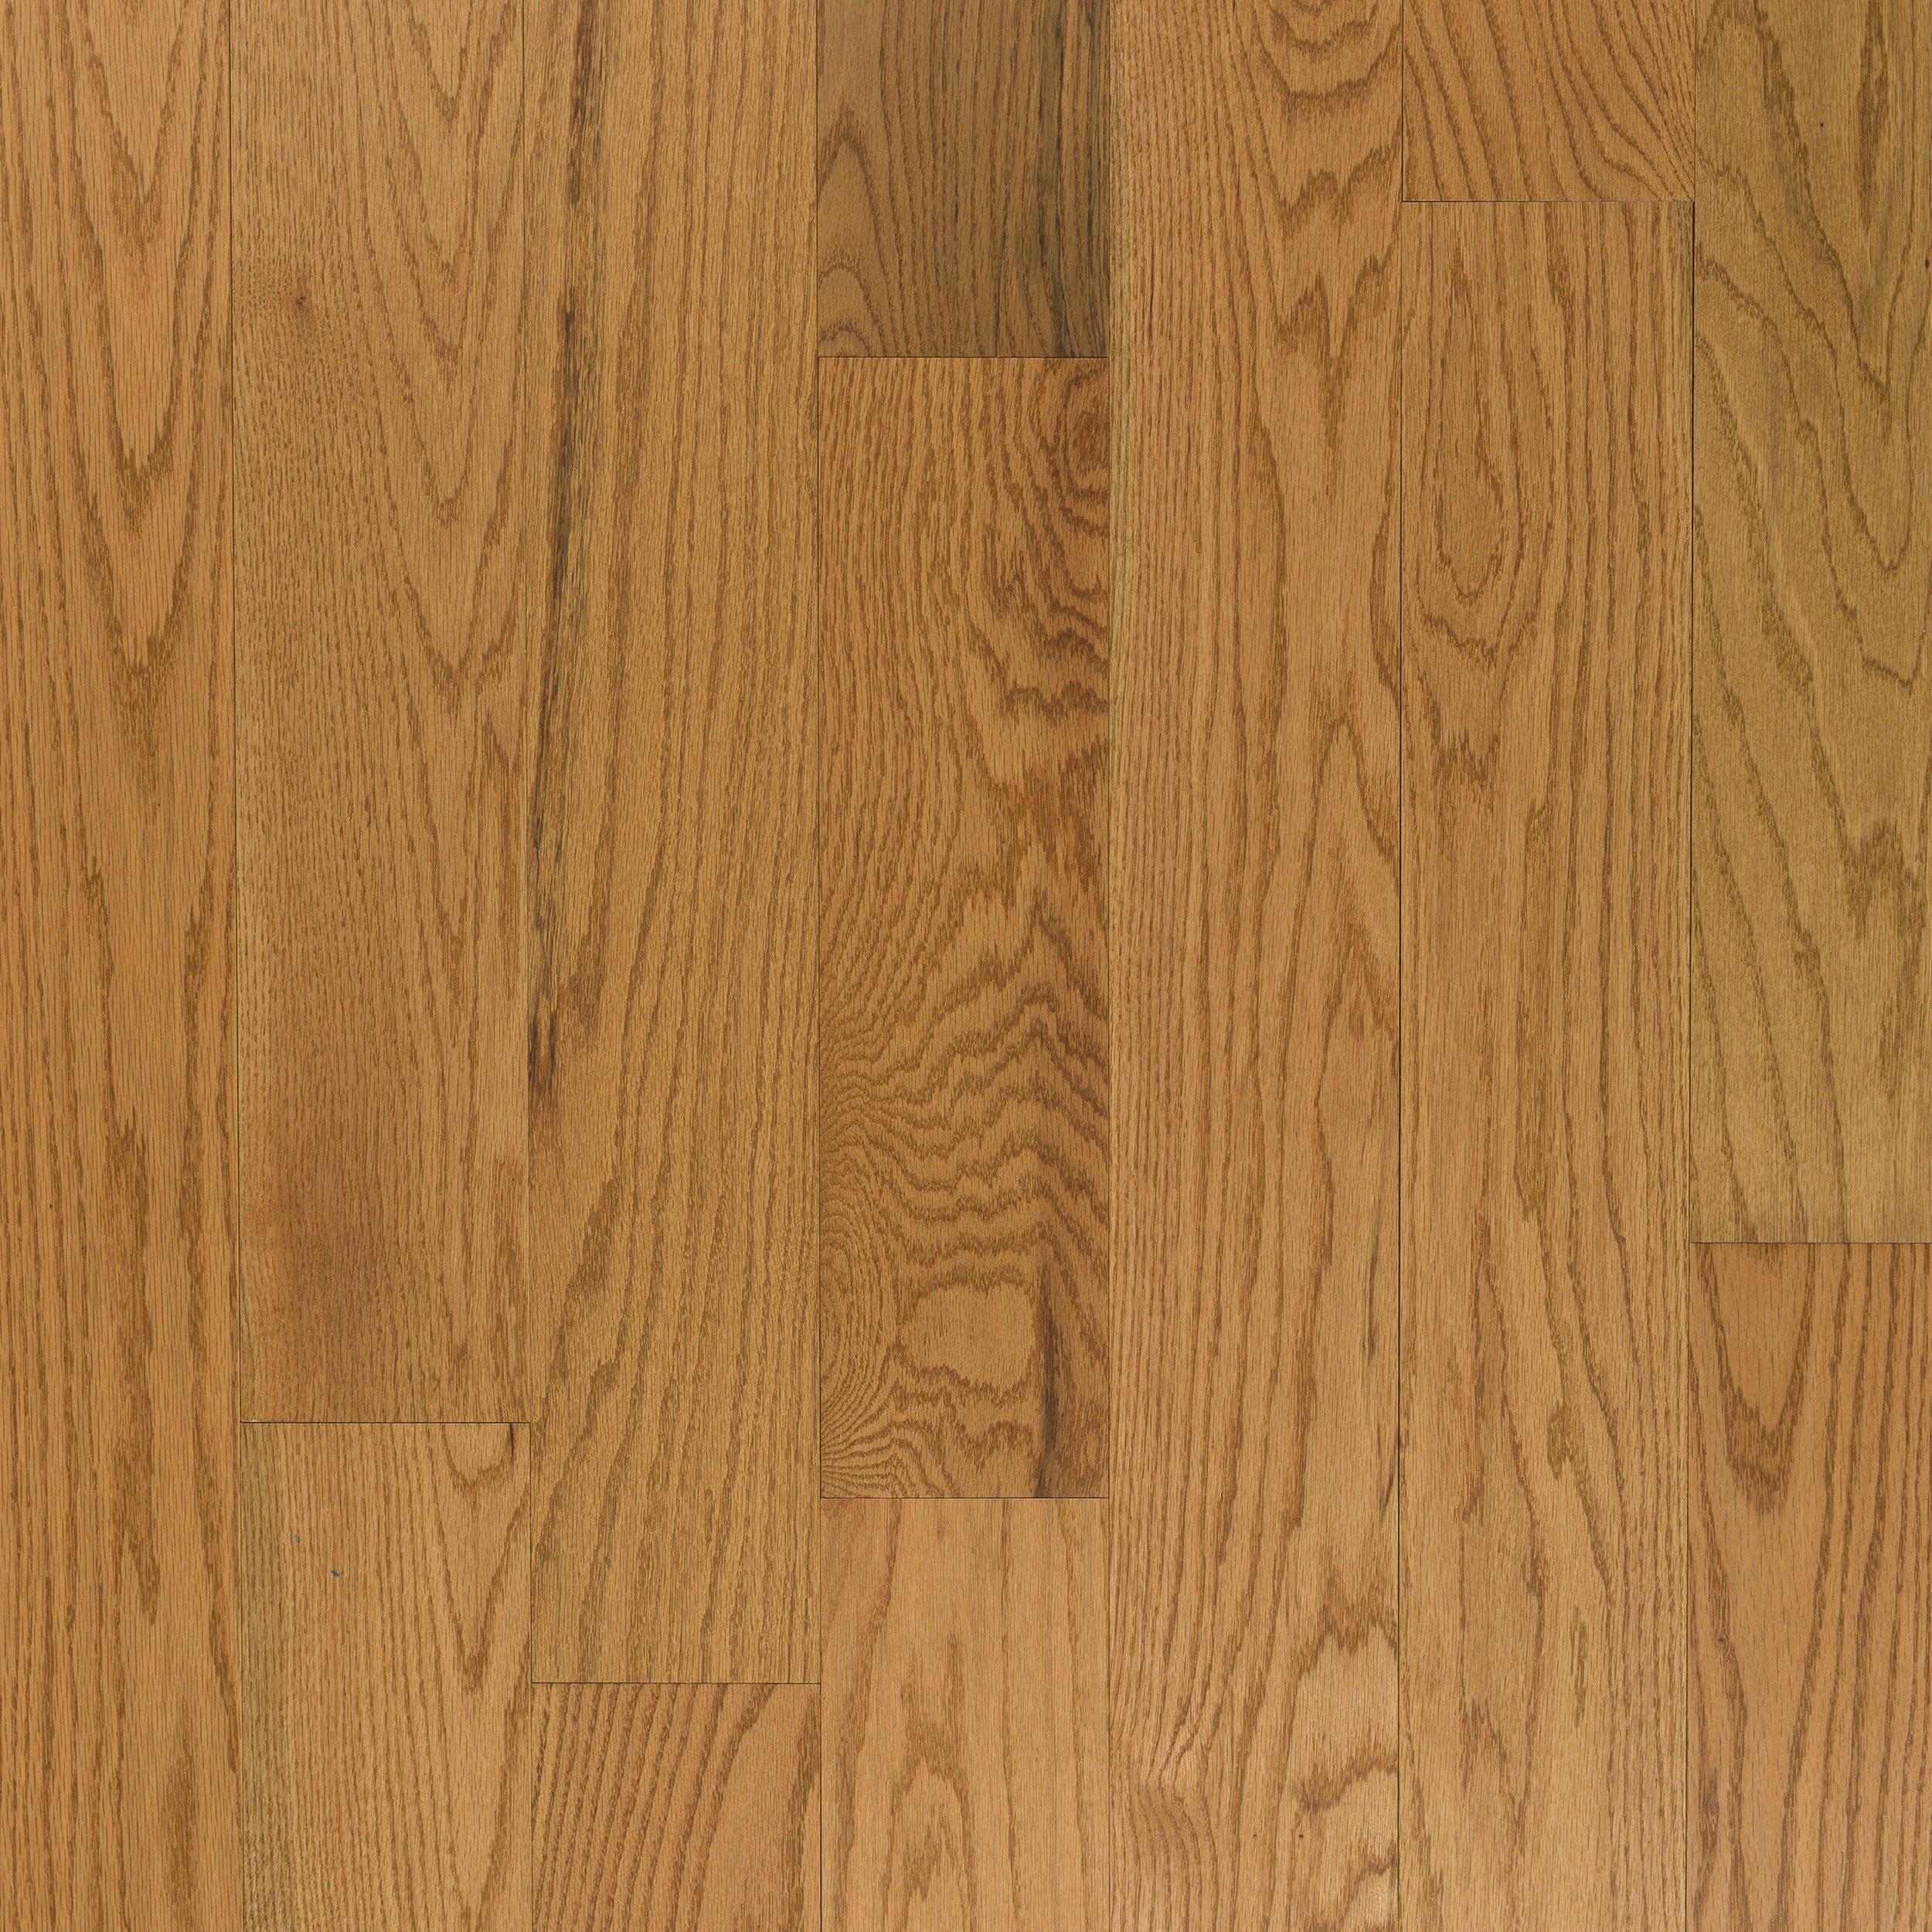 Frontier Oak Smooth Solid Hardwood, Frontier Hardwood Flooring